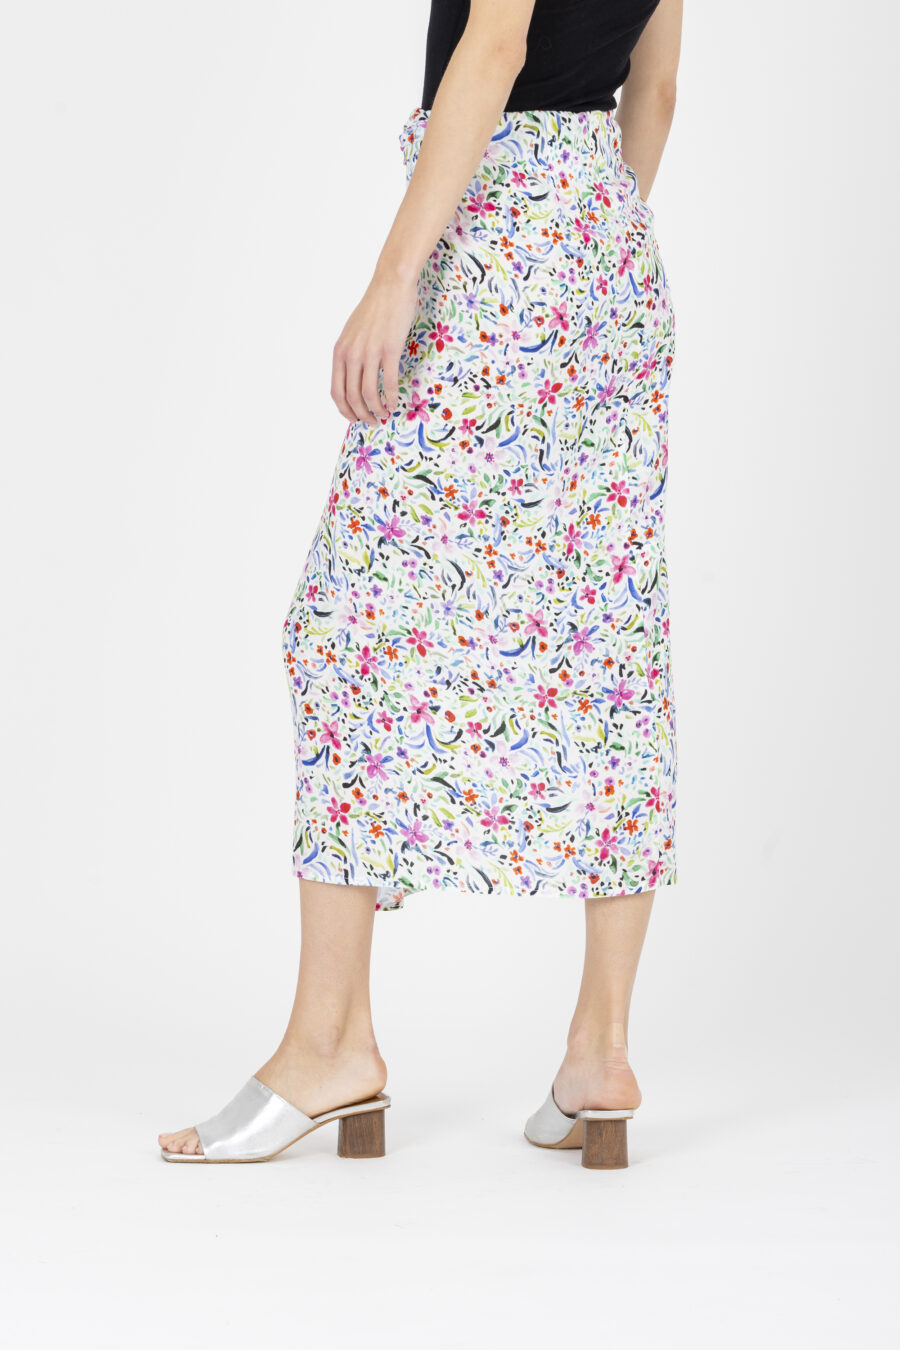 sylvia-skirt-blossom-floral-white-skirt